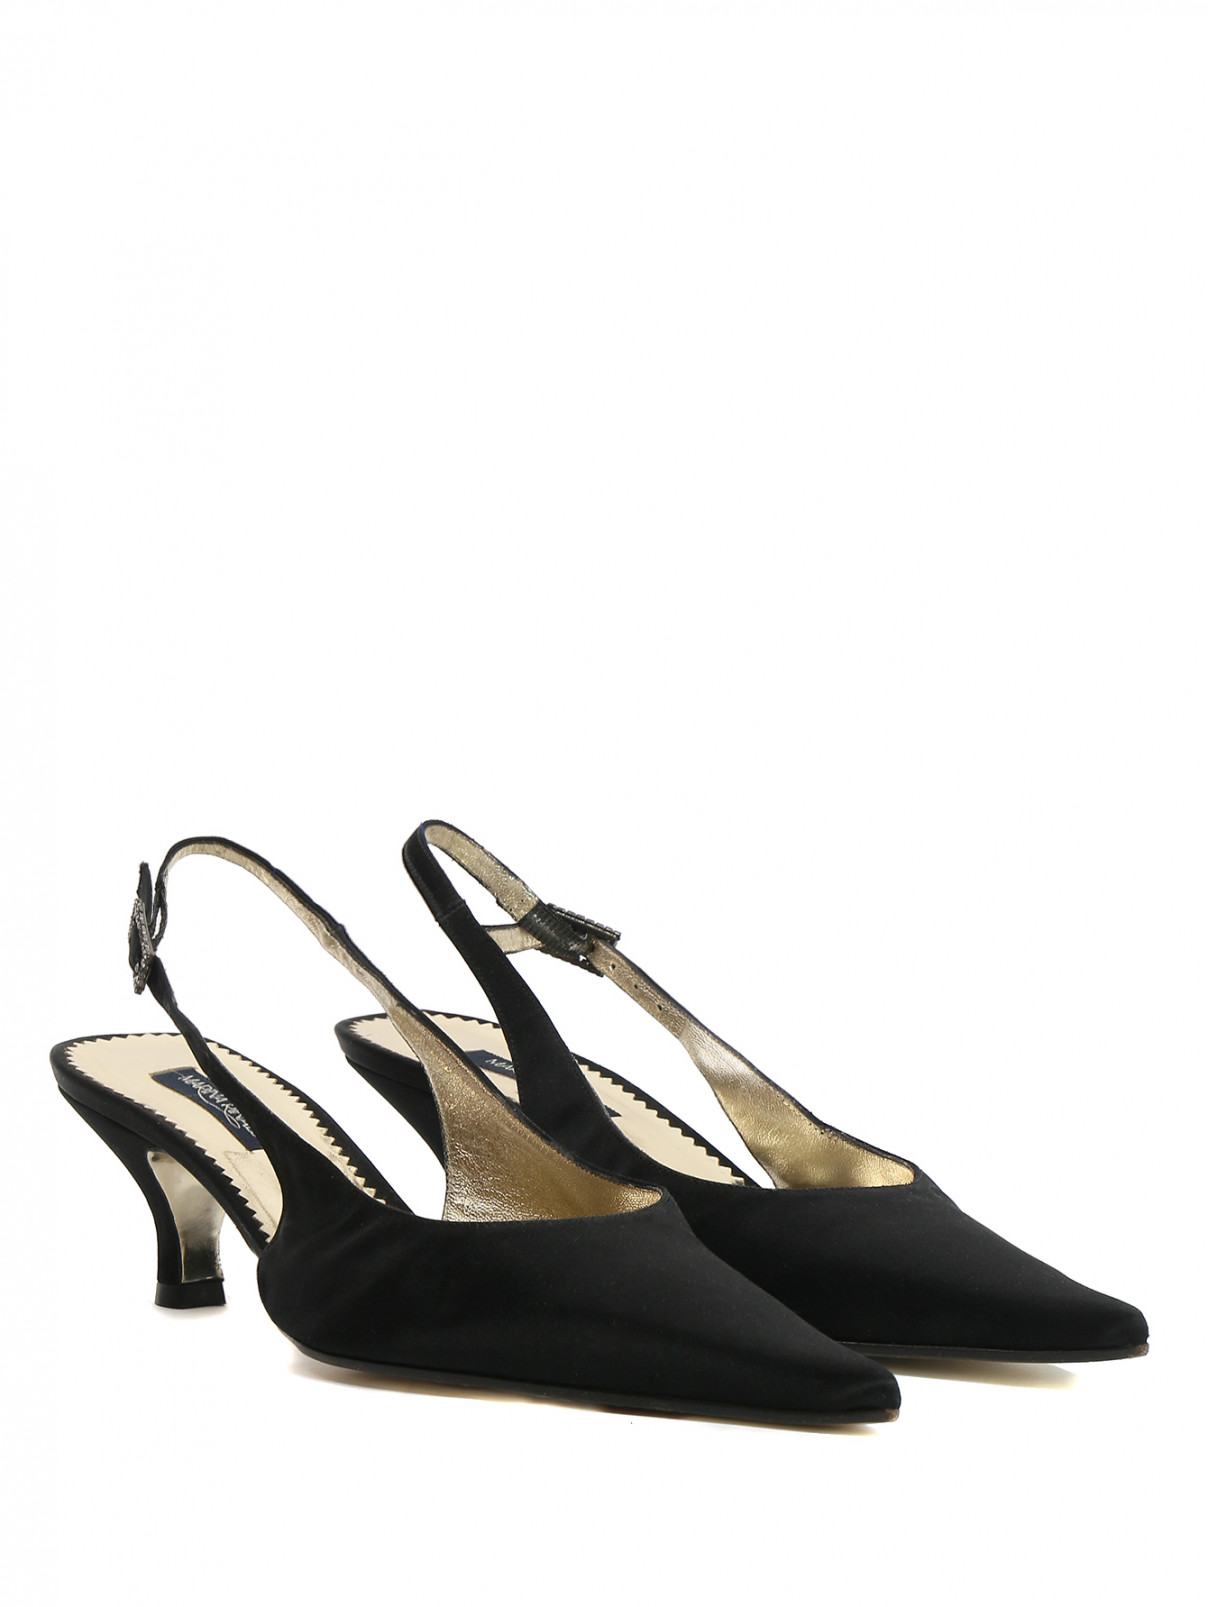 Туфли из текстиля на низком каблуке Marina Rinaldi  –  Общий вид  – Цвет:  Черный